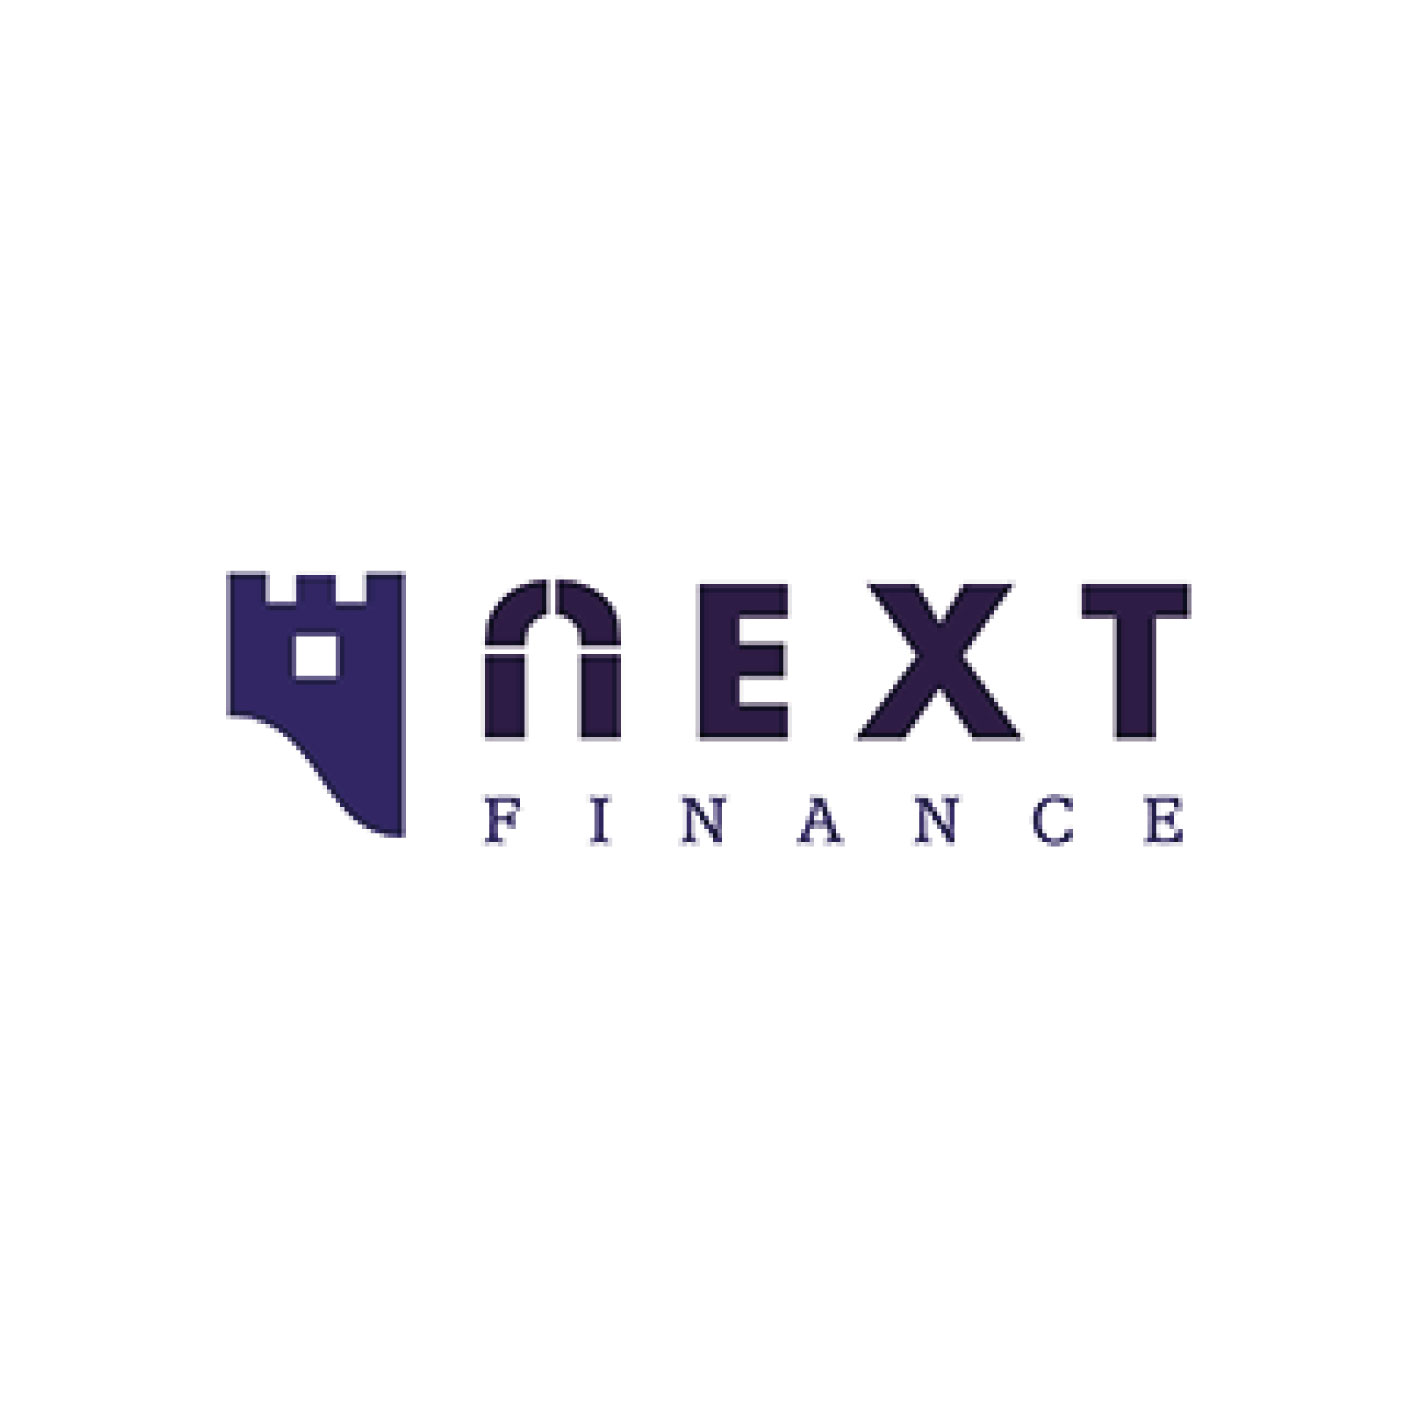 Next Finance